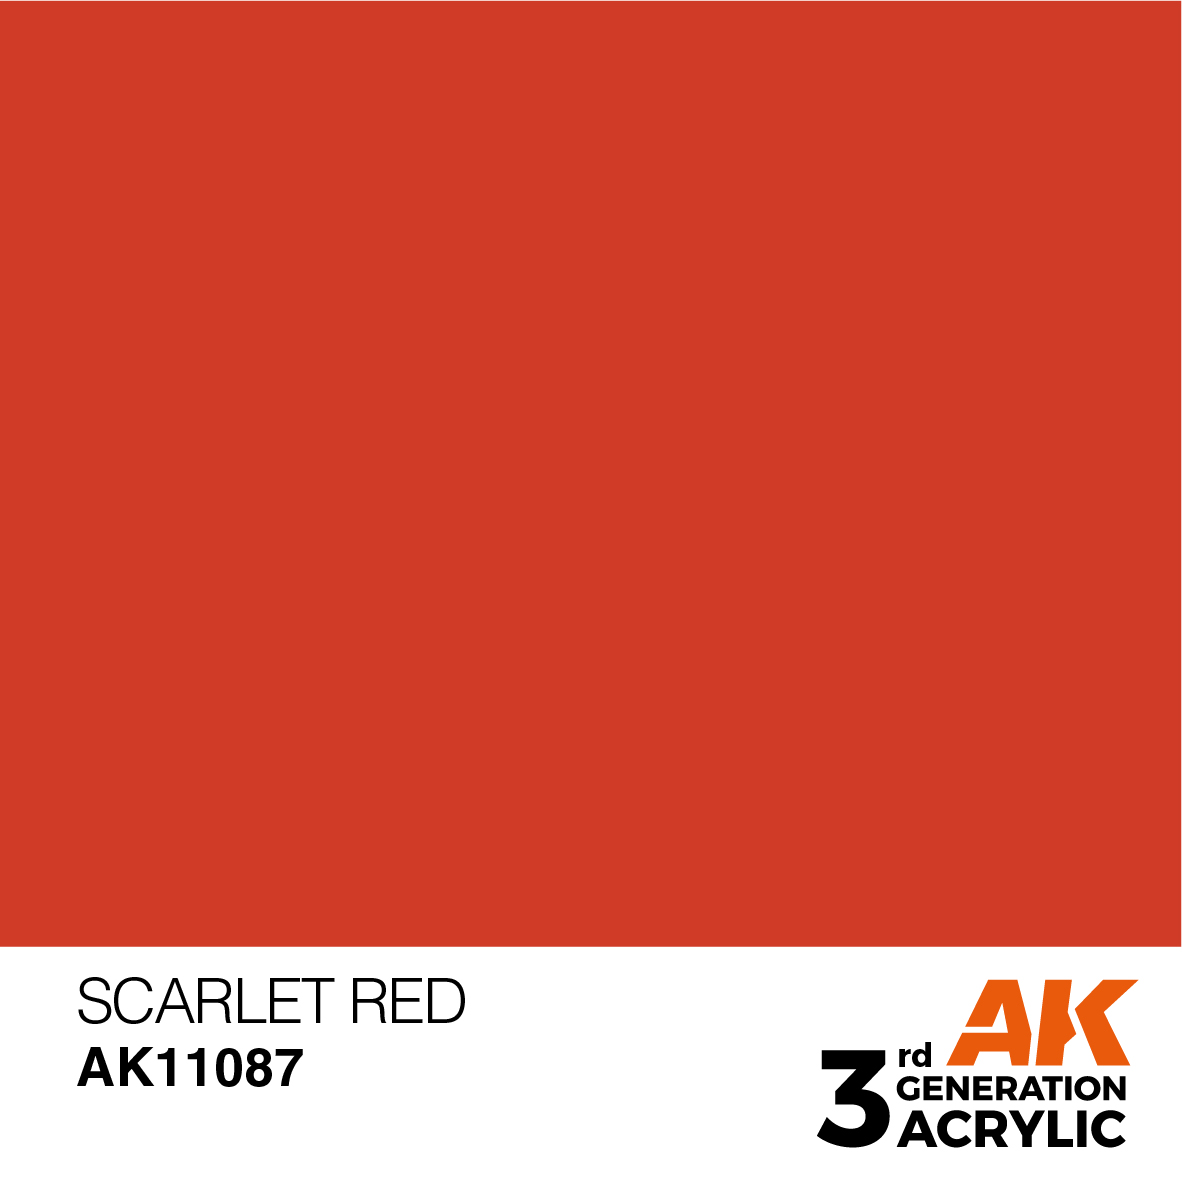 SCARLET RED – STANDARD